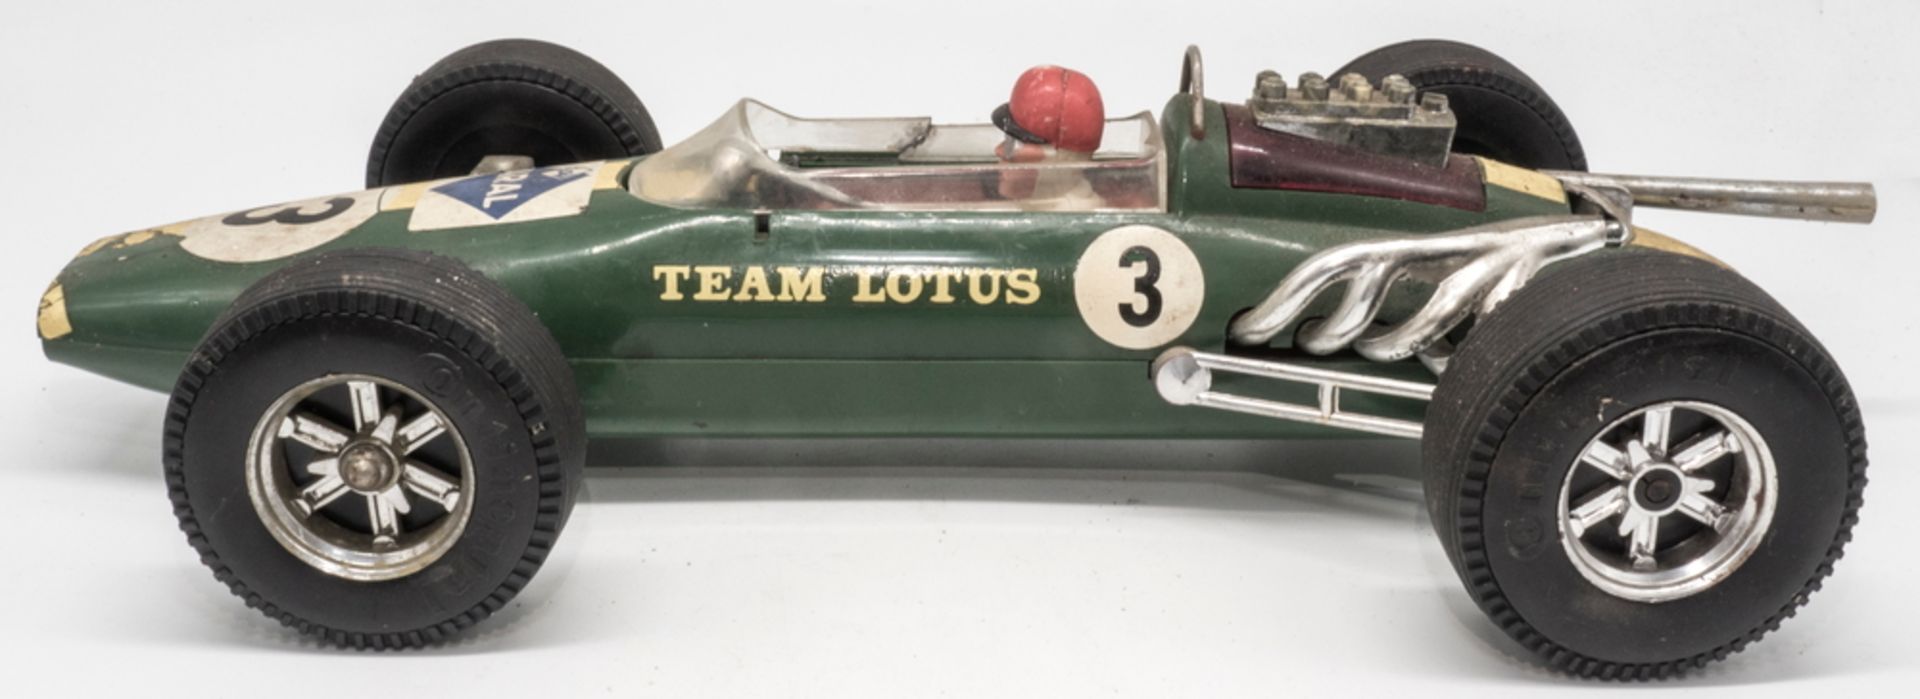 Gama Formel - Rennwagen Lotus, Maßstab: 1:16. Länge: ca. 34 cm. Friktionsantrieb. Mit Fehlteilen.